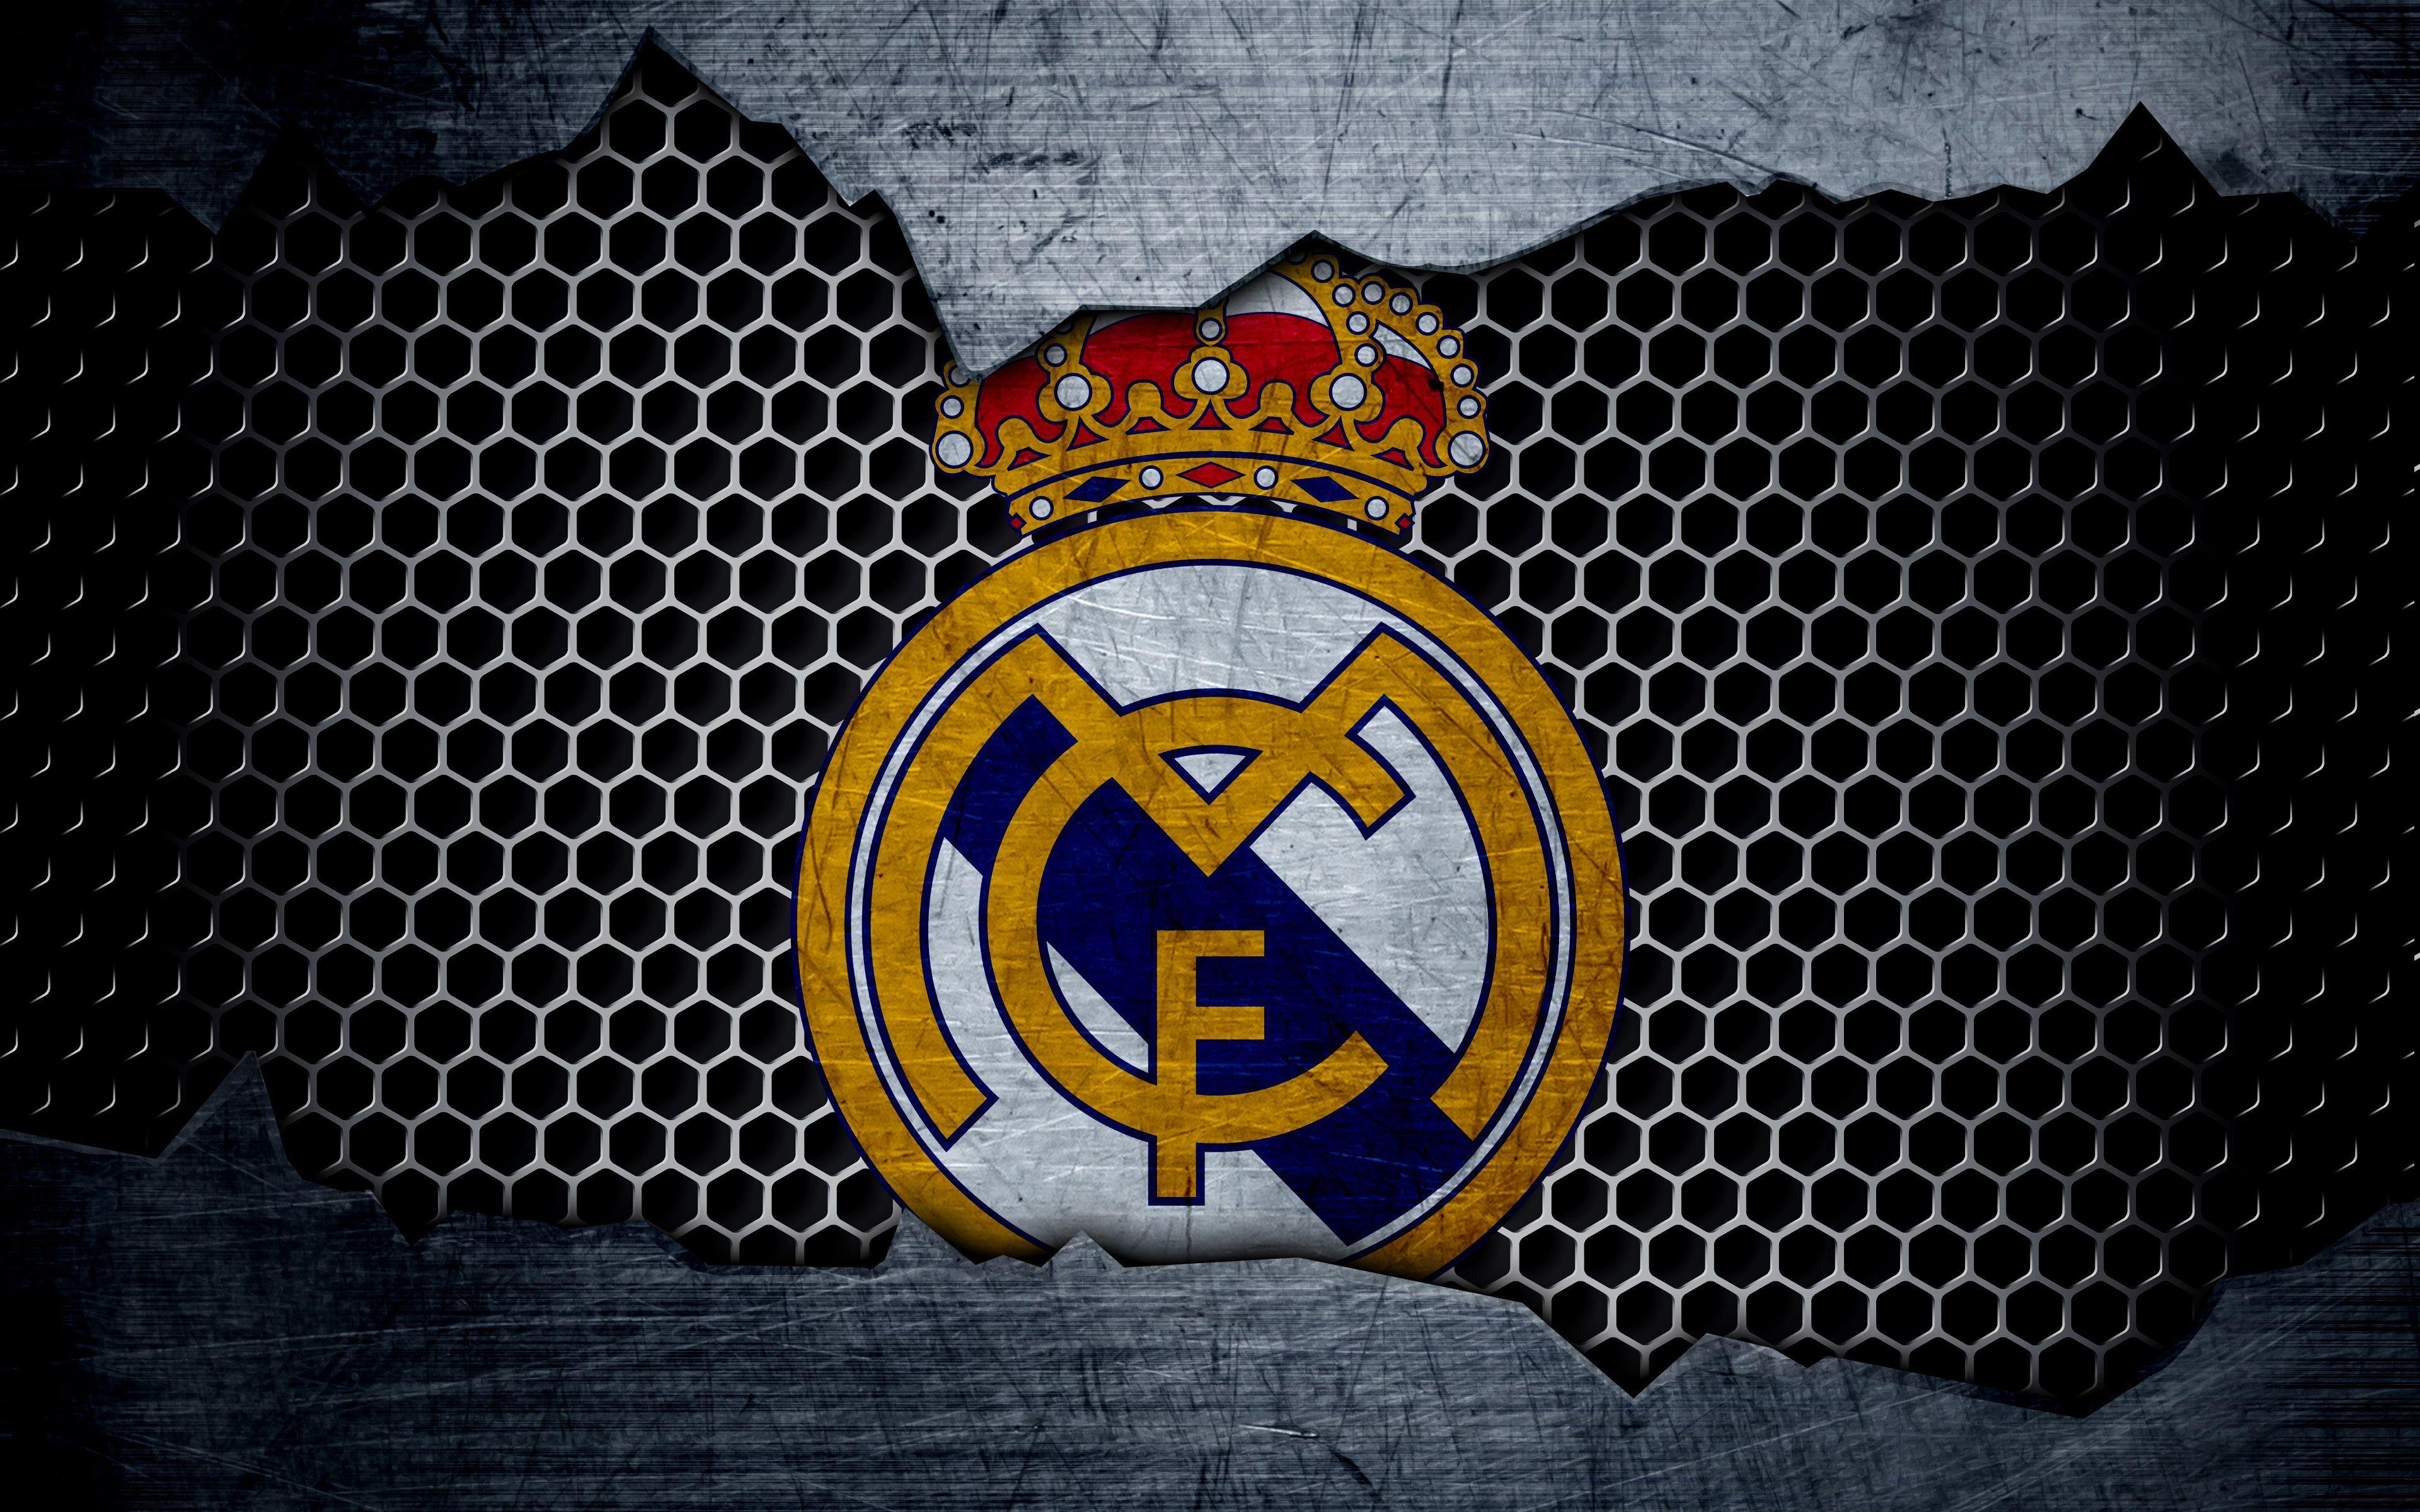 Bộ Sưu Tập Hình Nền Real Madrid Cực Chất Full 4K  Tổng Hợp Hơn 999 Hình  Nền Real Madrid  TH Điện Biên Đông